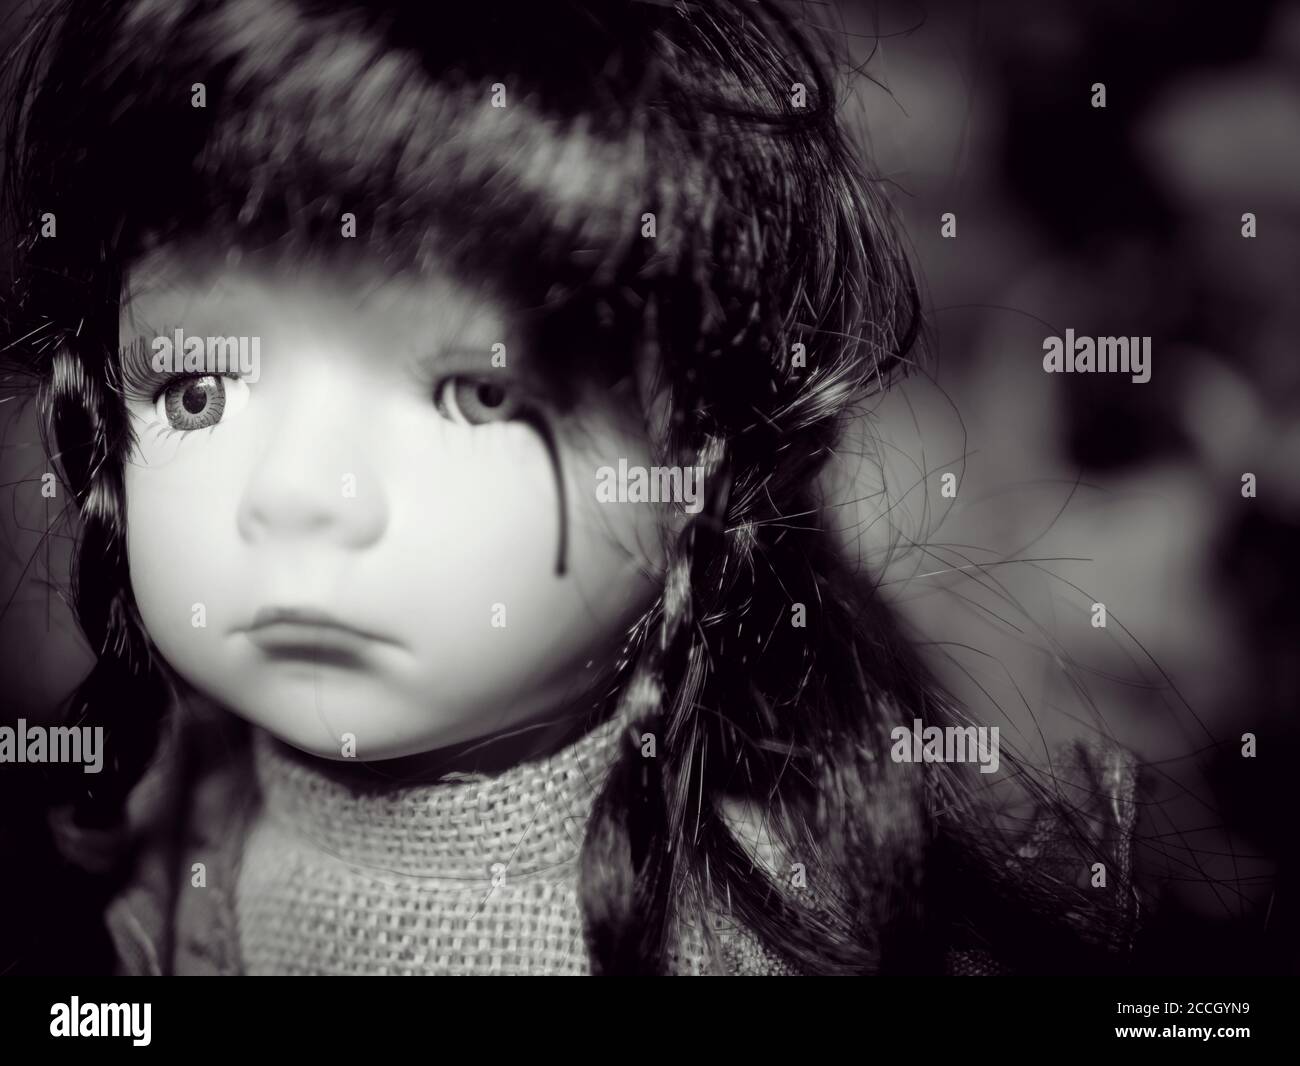 Lutte contre la violence chez les enfants concept de la campagne pour les problèmes familiaux : petite fille adorable poupée pleurs de sang de déchirure de la violence sociale familiale. Noir et blanc c Banque D'Images